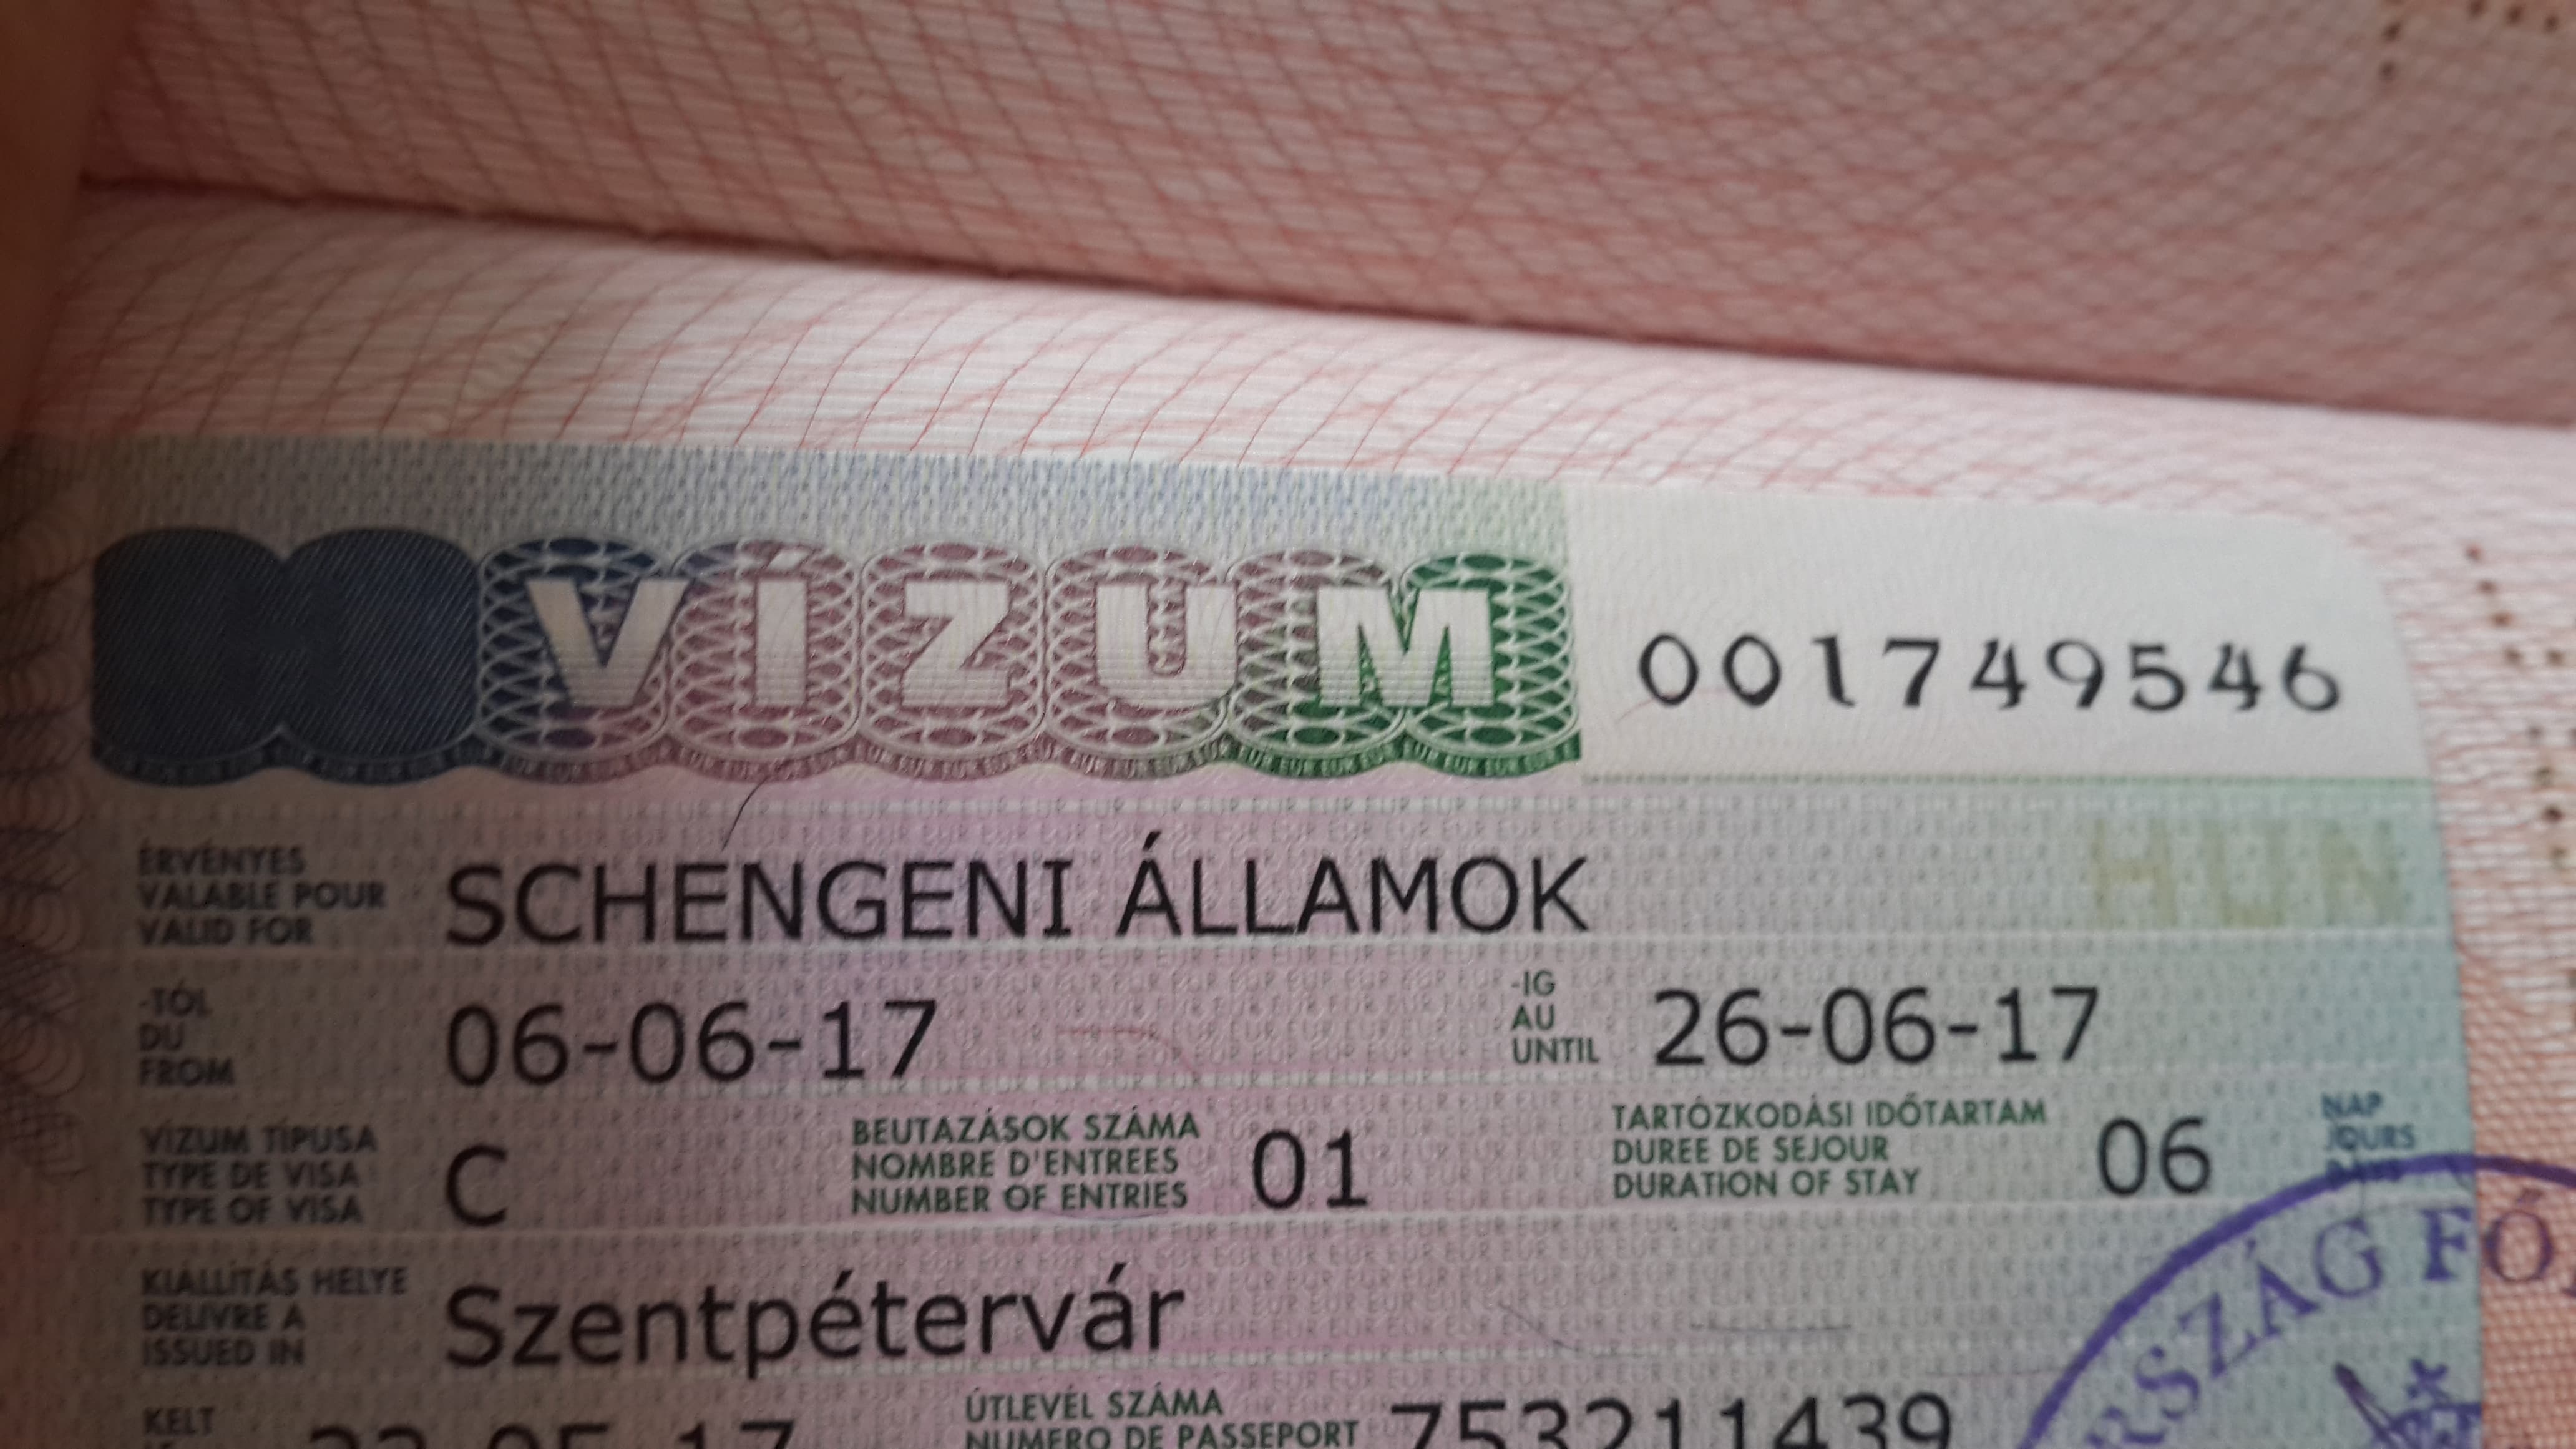 Виза в венгрию для россиян, как получить и самостоятельно оформить шенген, образец заполнения анкеты и список документов для разрешения на въезд